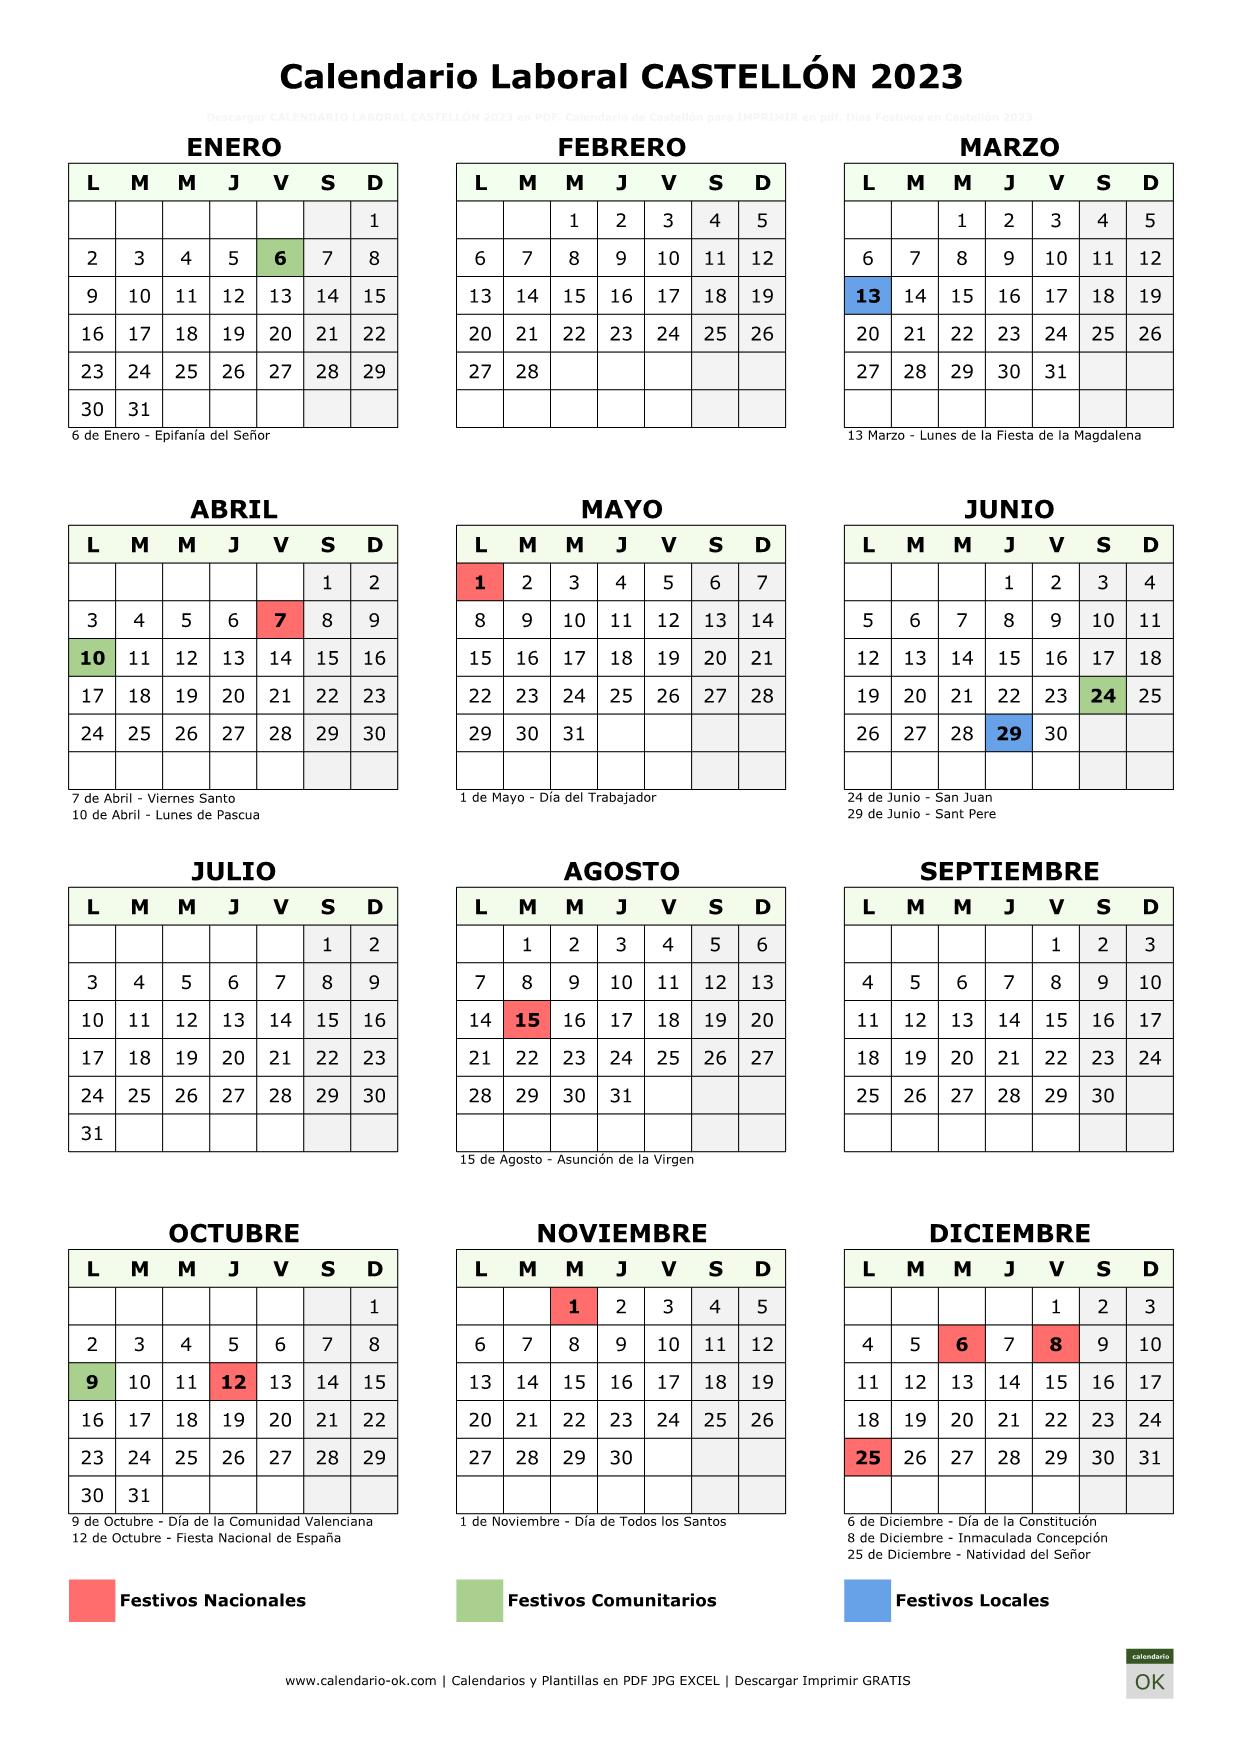 Calendario Laboral Castellón 2023 vertical